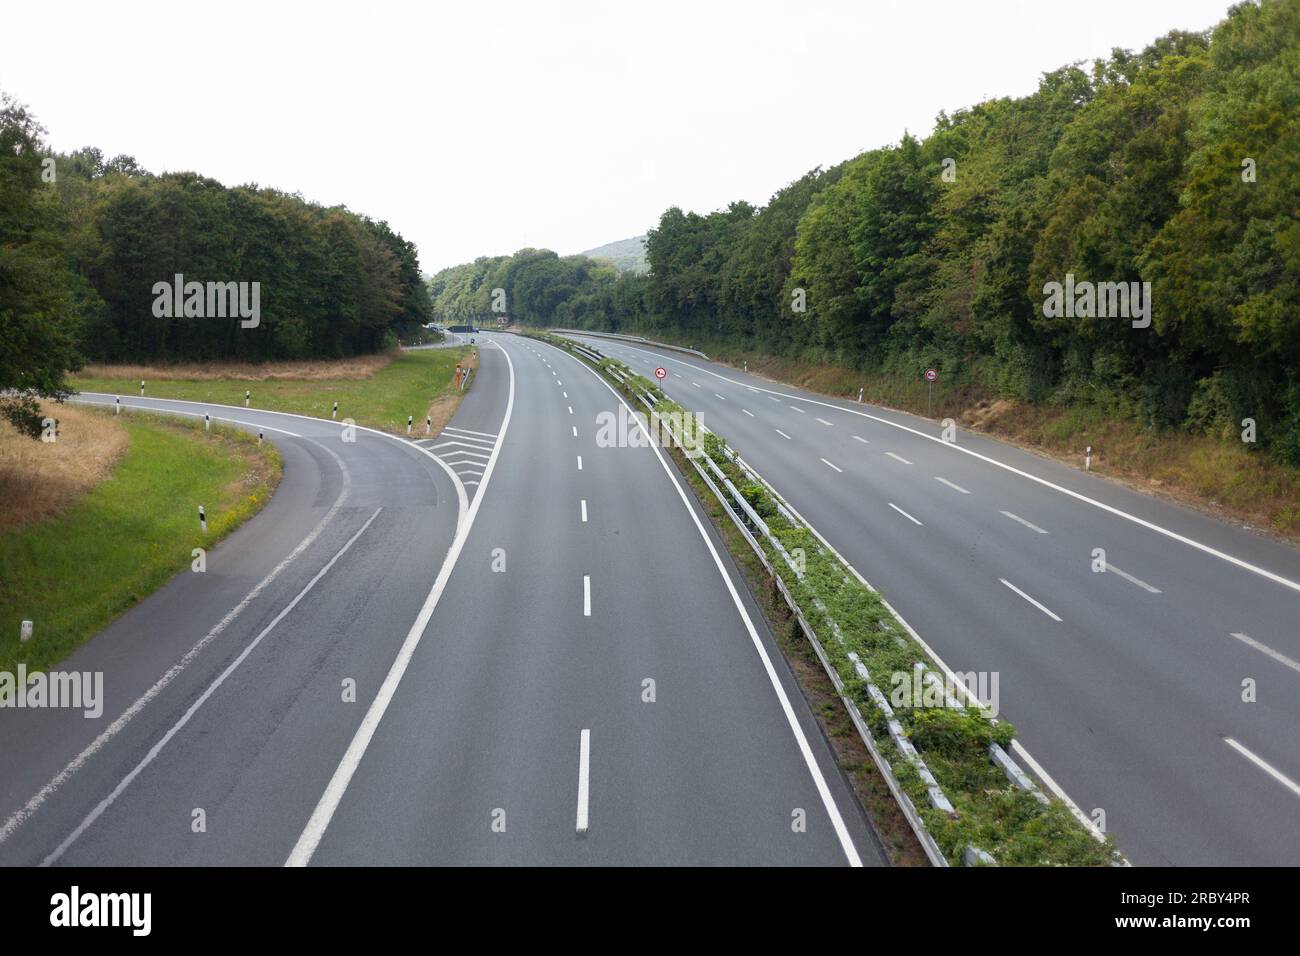 autostrada in campagna, foto come sfondo, immagine digitale Foto Stock